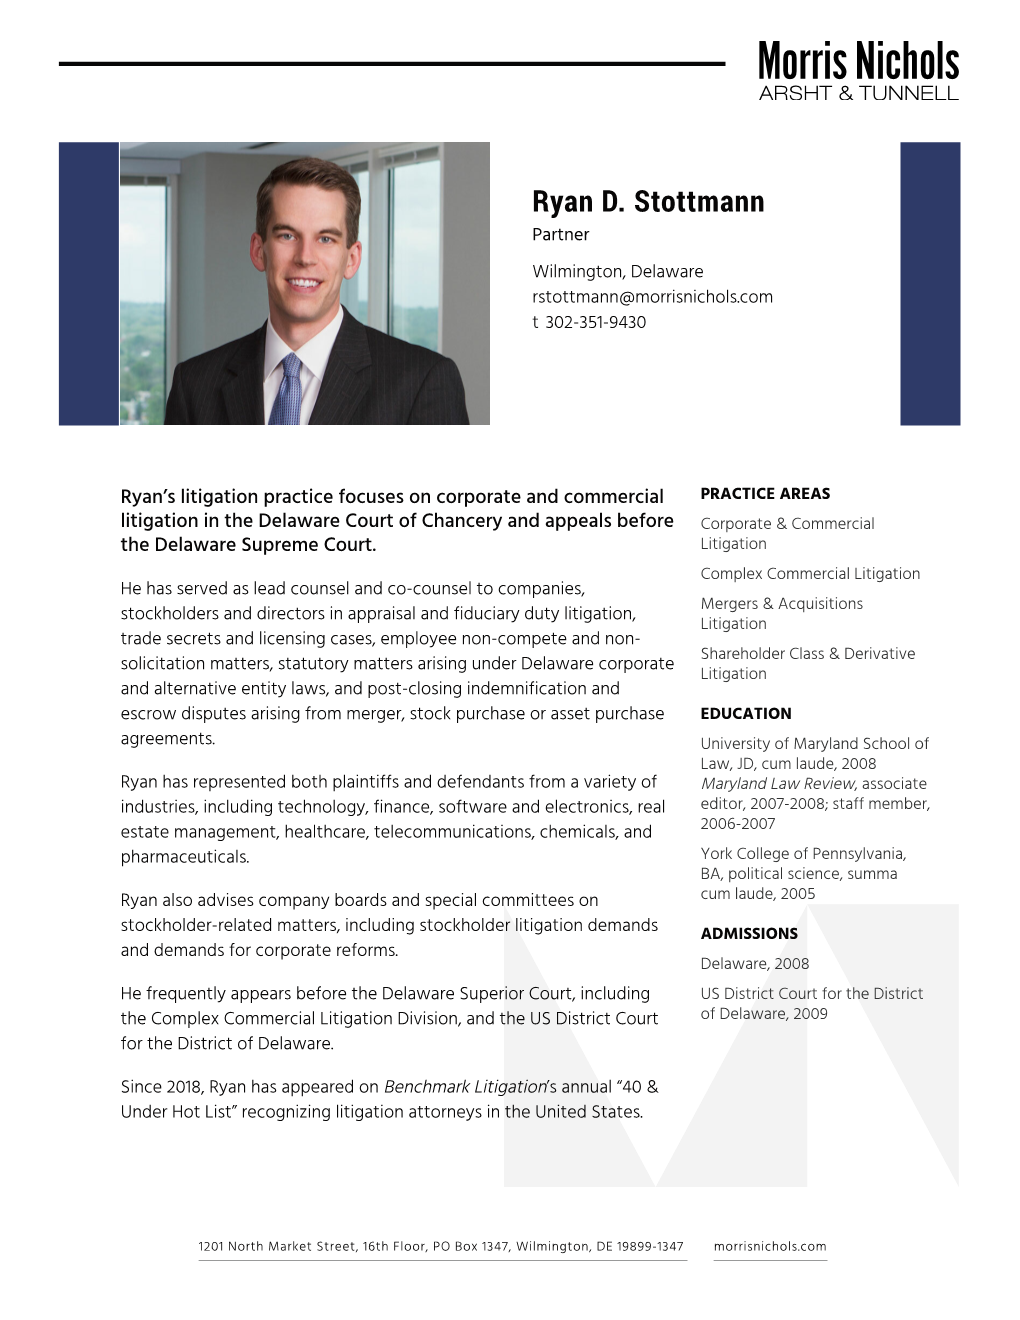 Ryan D. Stottmann Partner